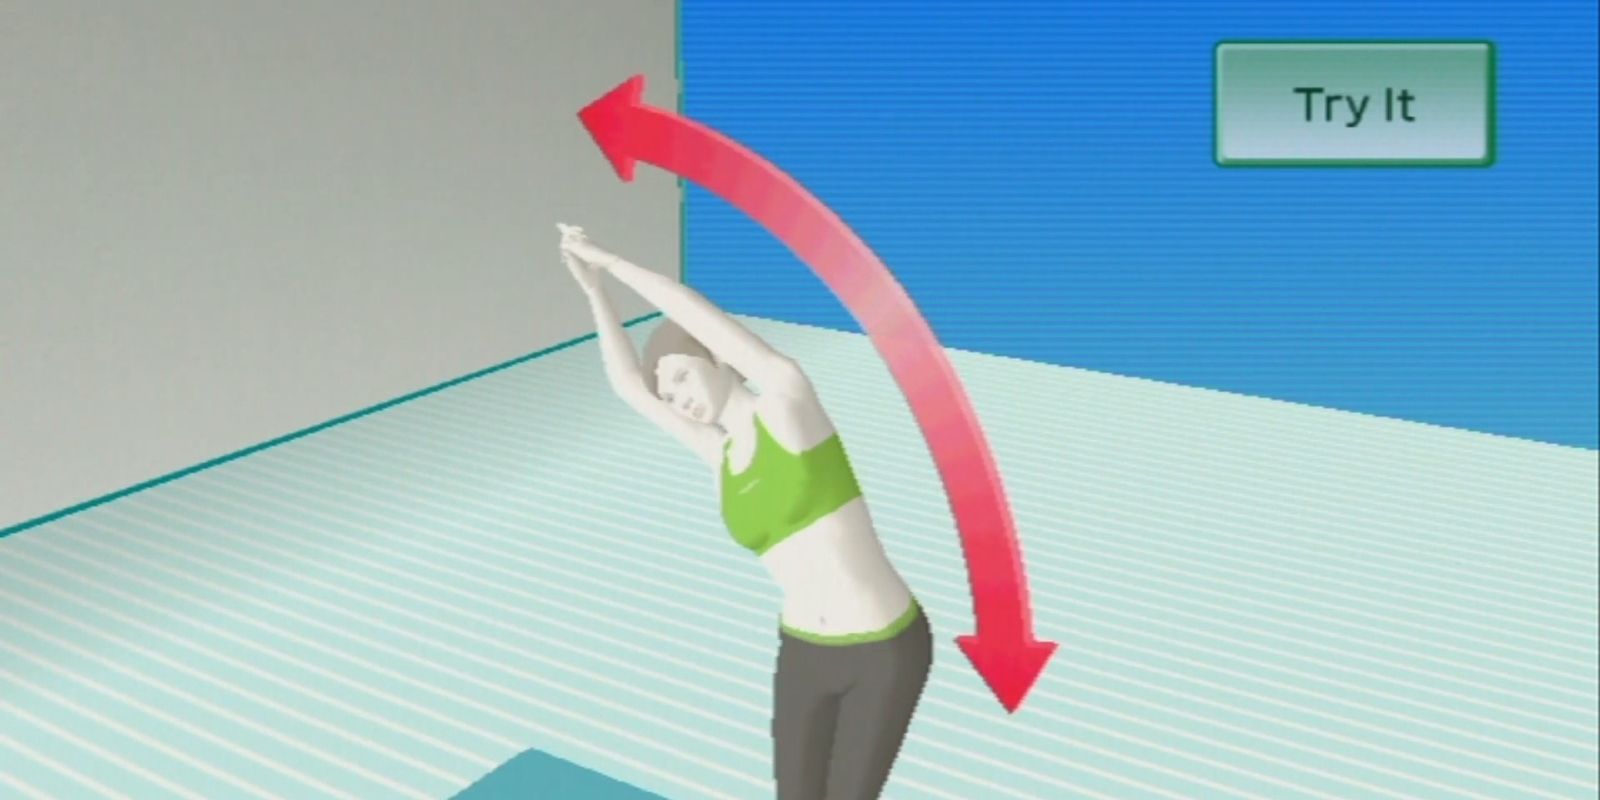 Wii Fit Trainer ensinando ao jogador uma pose de exercício no Wii Fit Plus